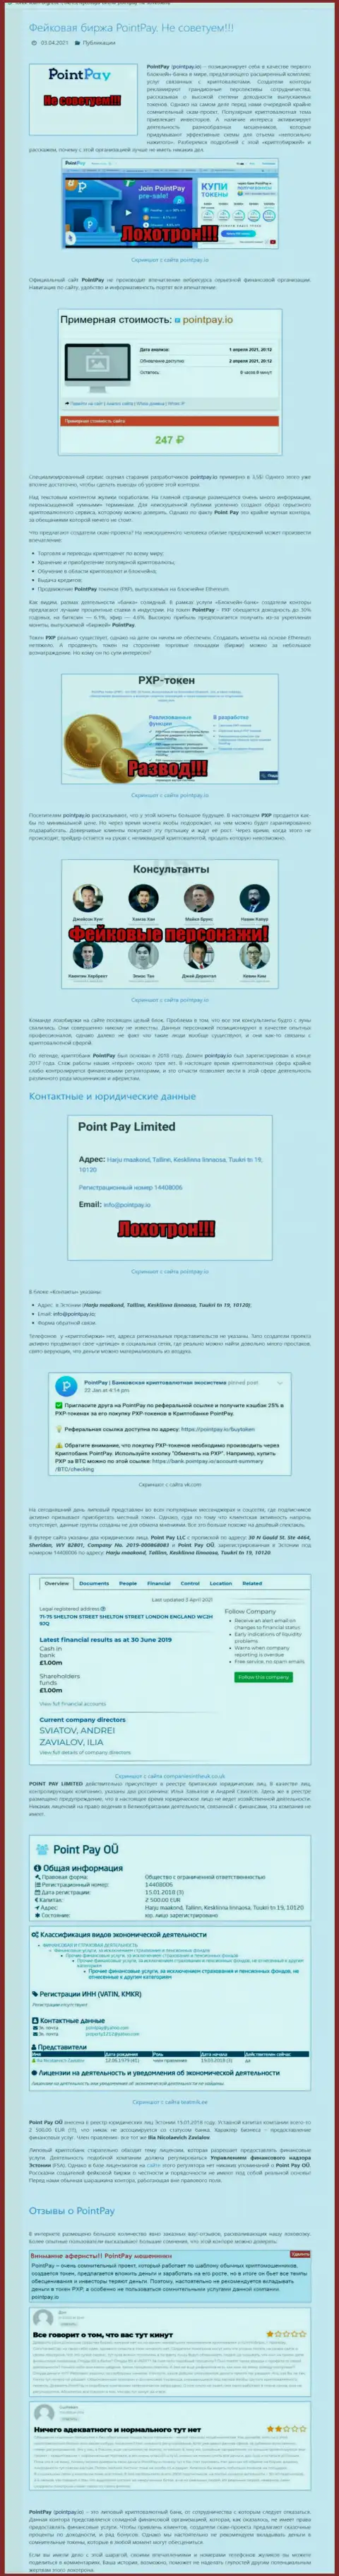 ОСТОРОЖНО !!! PointPay находится в поиске клиентов - это МОШЕННИКИ !!! (обзор афер)